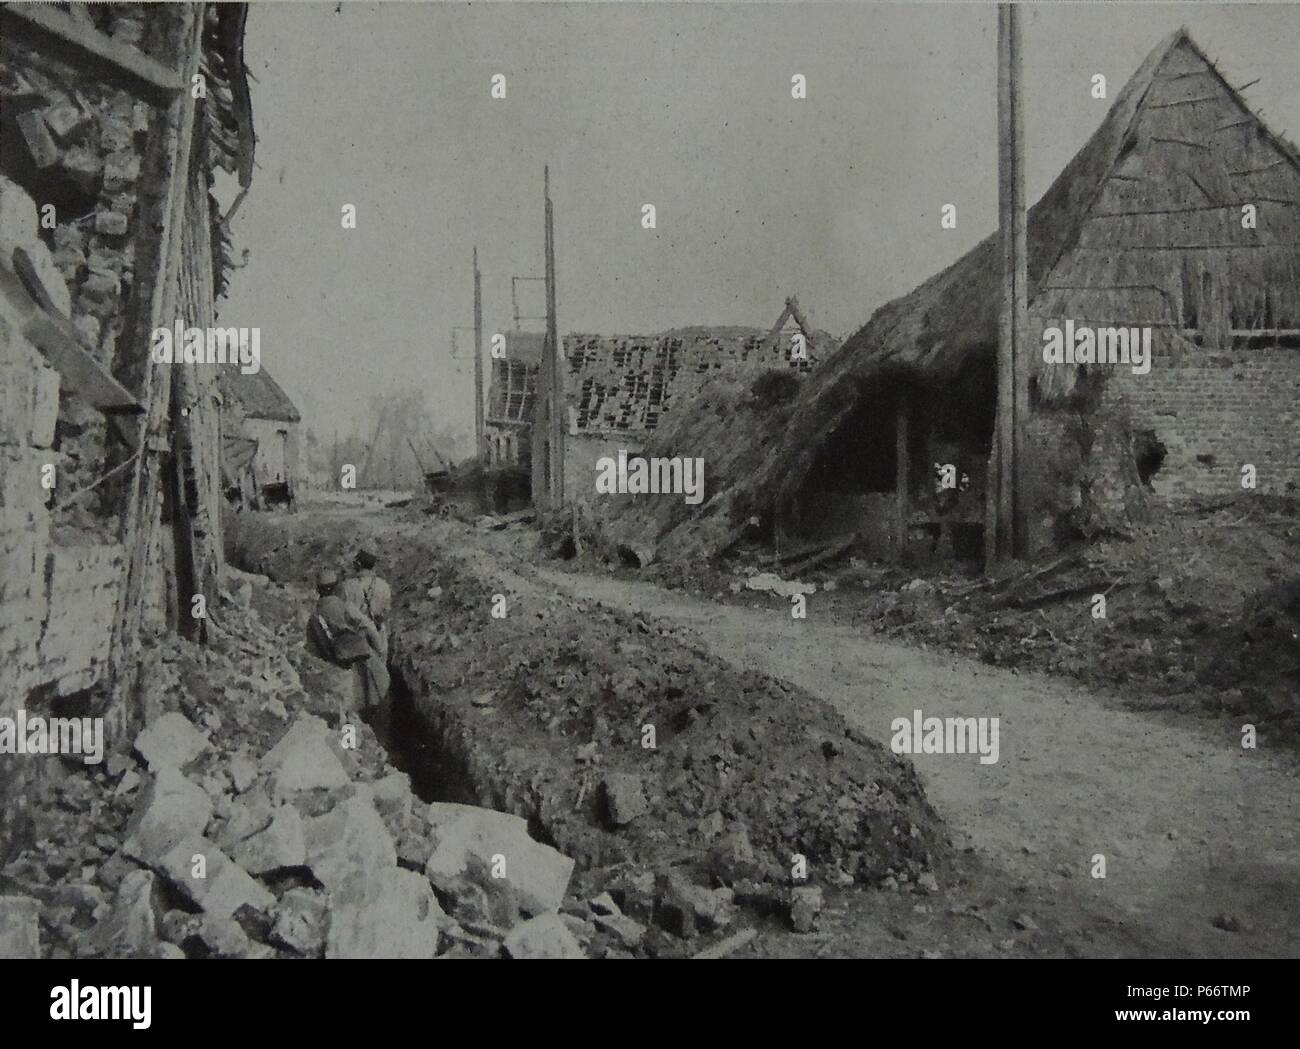 Zerstörung durch die deutsche Armee in der Stadt ABLAIN-SAINT-NAZAIRE, während der zweiten Schlacht von Artois, vom 9. Mai - 18. Juni 1915. der Westfront während des Ersten Weltkrieges. Stockfoto